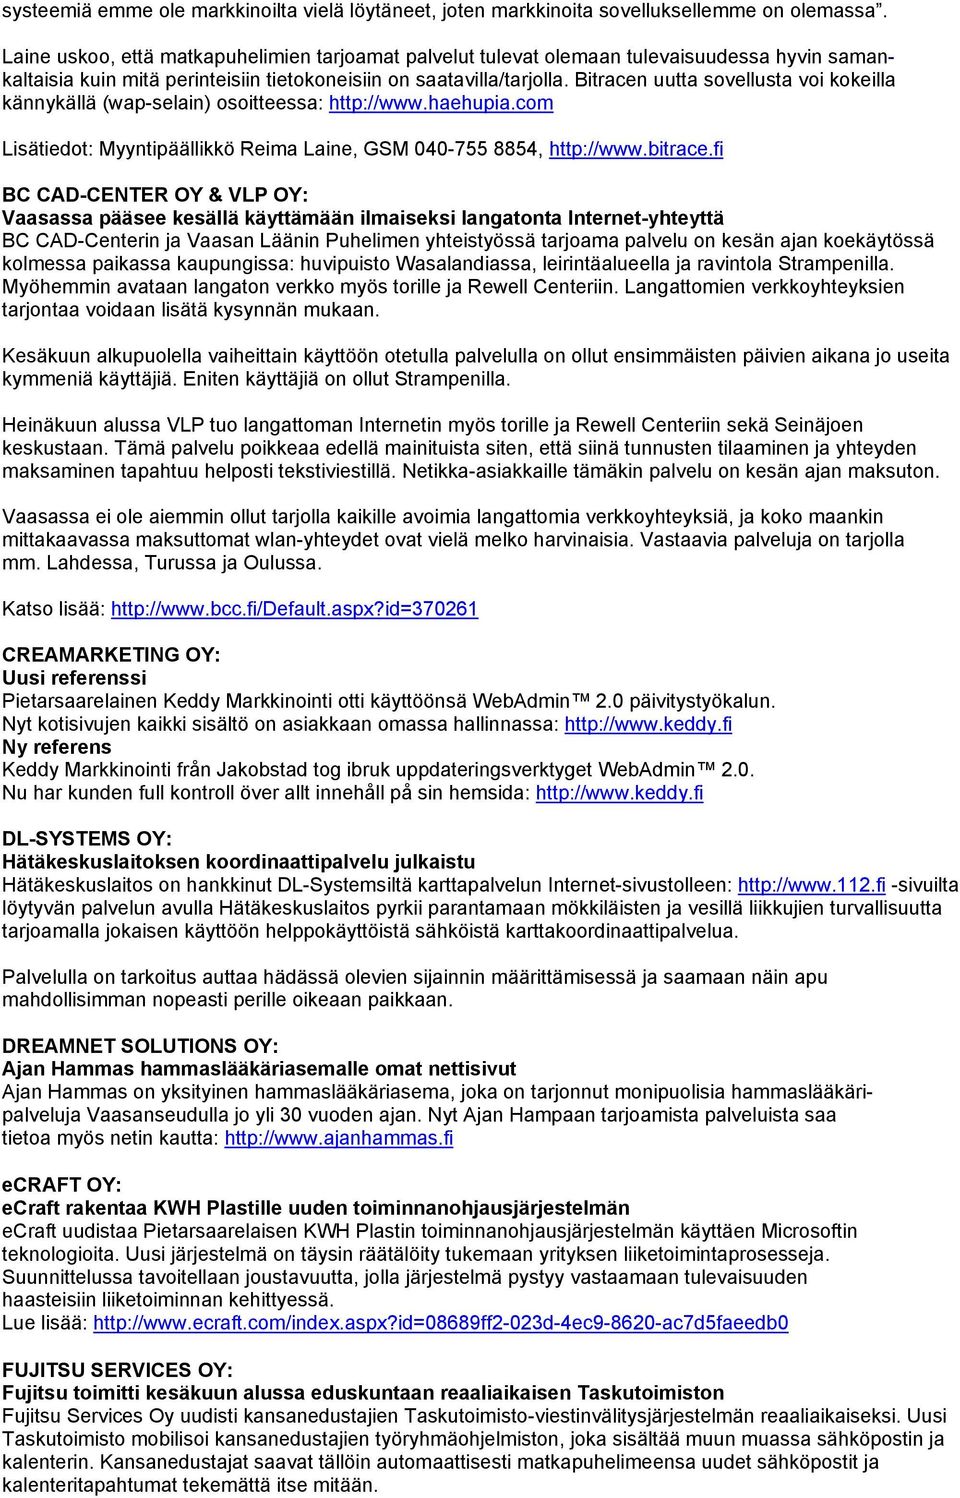 Bitracen uutta sovellusta voi kokeilla kännykällä (wap-selain) osoitteessa: http://www.haehupia.com Lisätiedot: Myyntipäällikkö Reima Laine, GSM 040-755 8854, http://www.bitrace.